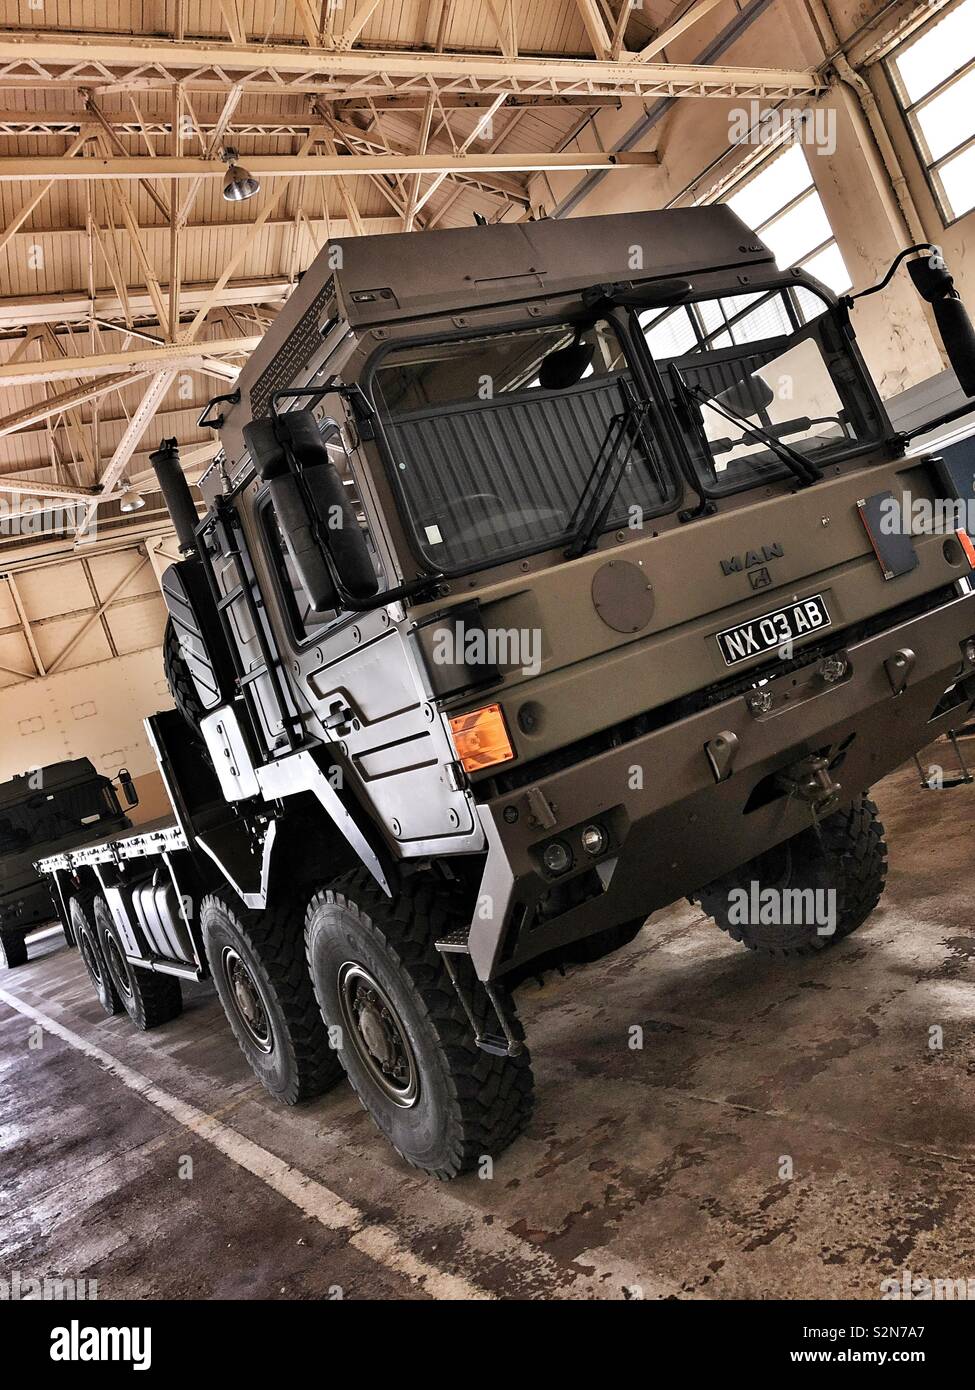 British Army MAN Truck Stock Photo